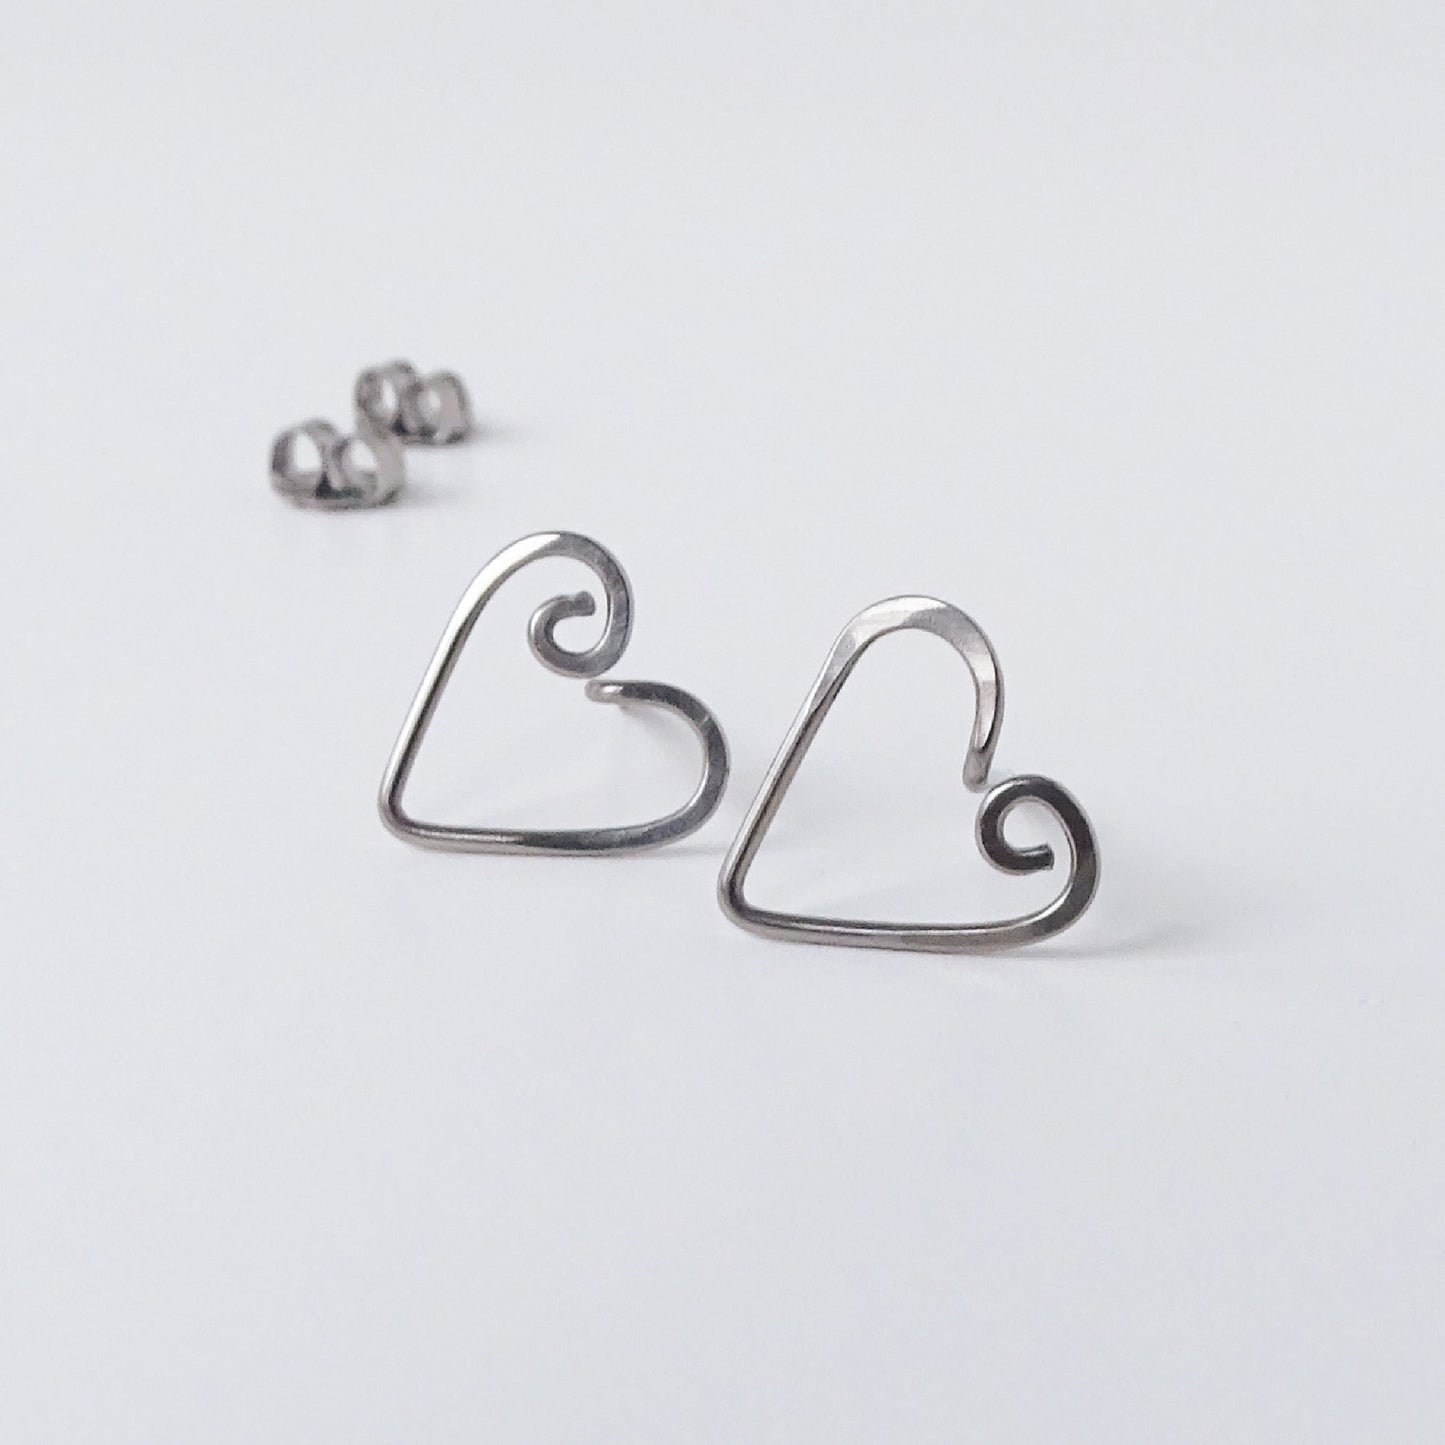 Small Heart Studs Niobium Post Earrings, Wire Swirl Love Heart Posts, Hypoallergenic Nickel Free Open Heart Stud Earrings for Sensitive Ears